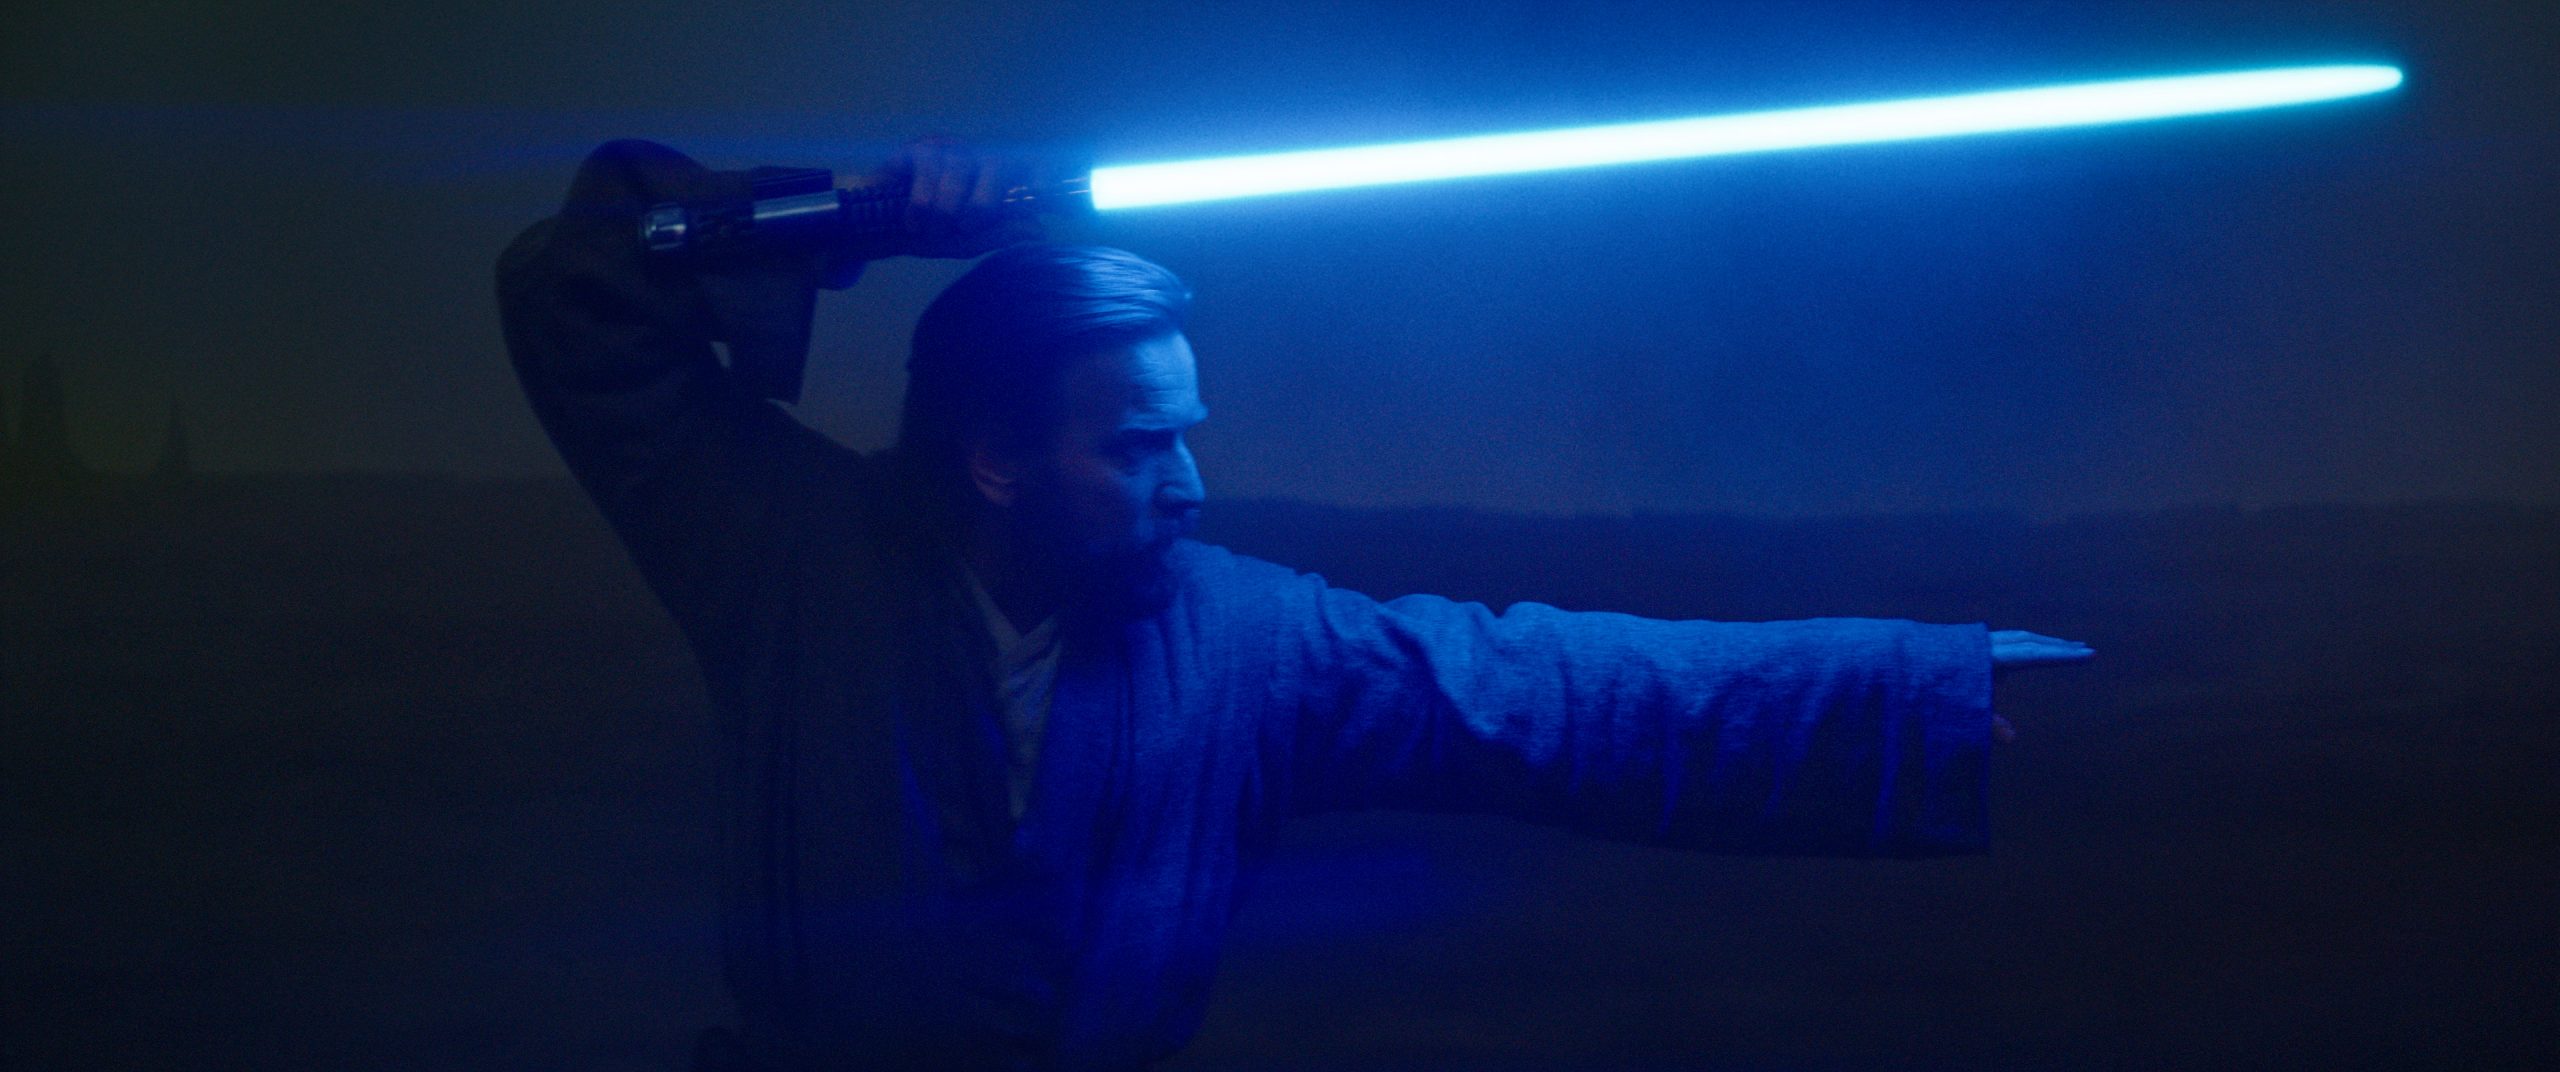 Obi-Wan Kenobi (Ewan McGregor) em OBI-WAN KENOBI da Lucasfilm, exclusivamente no Disney+. © 2022 Lucasfilm Ltd. Todos os direitos reservados.